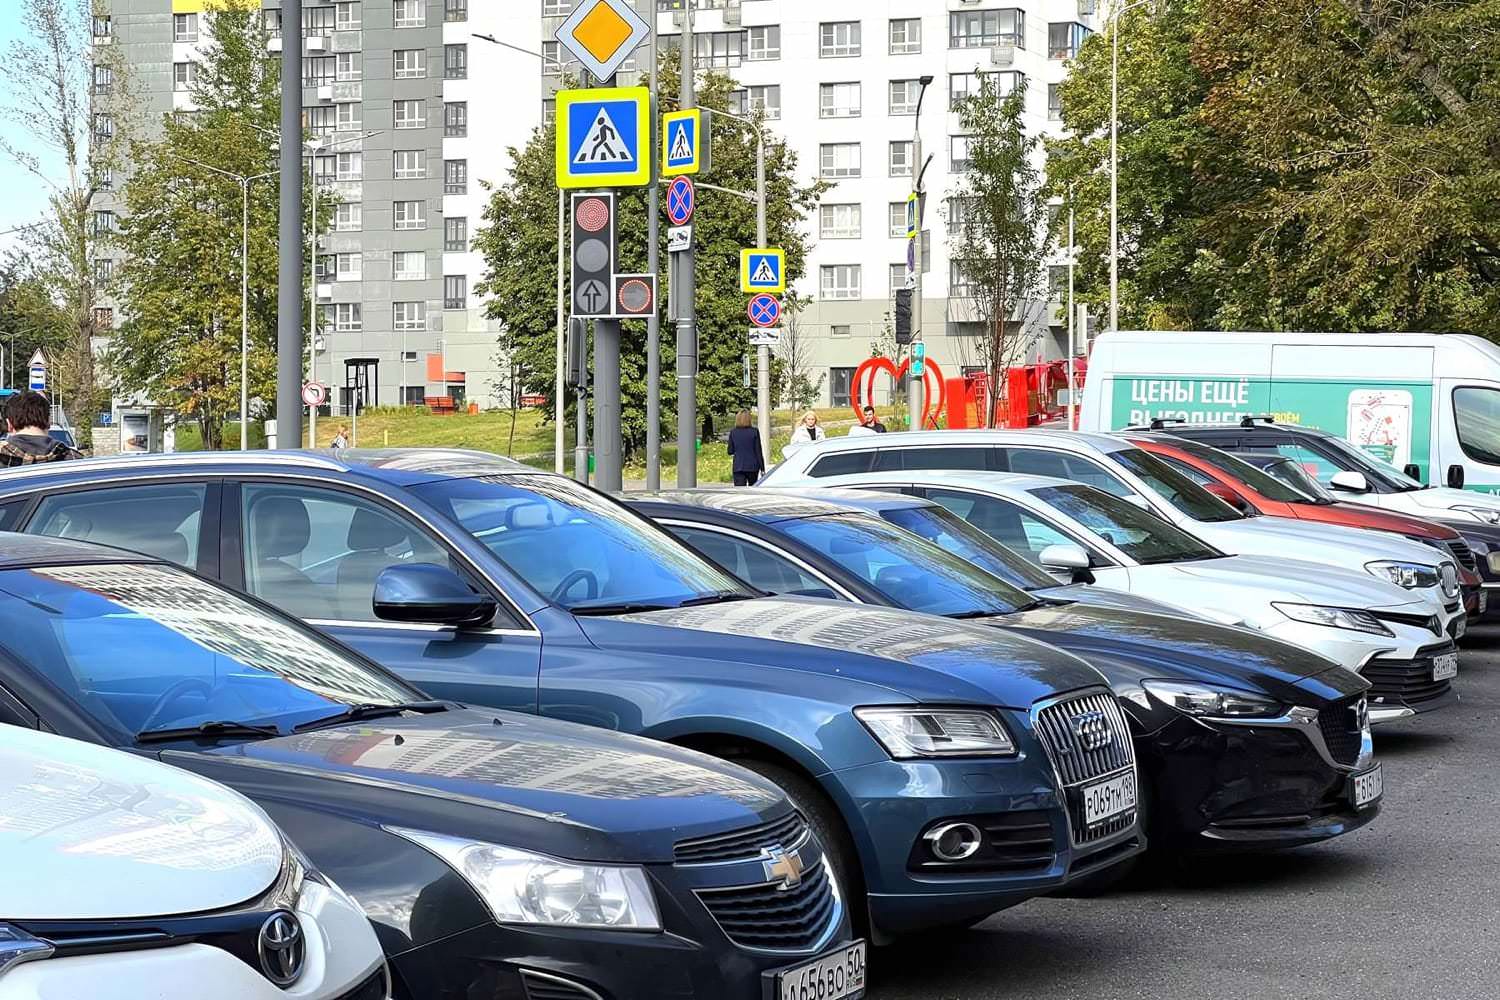 5 000 рублей штрафа. Водителей автомобилей ждет крайне неприятный сюрприз в российских городах